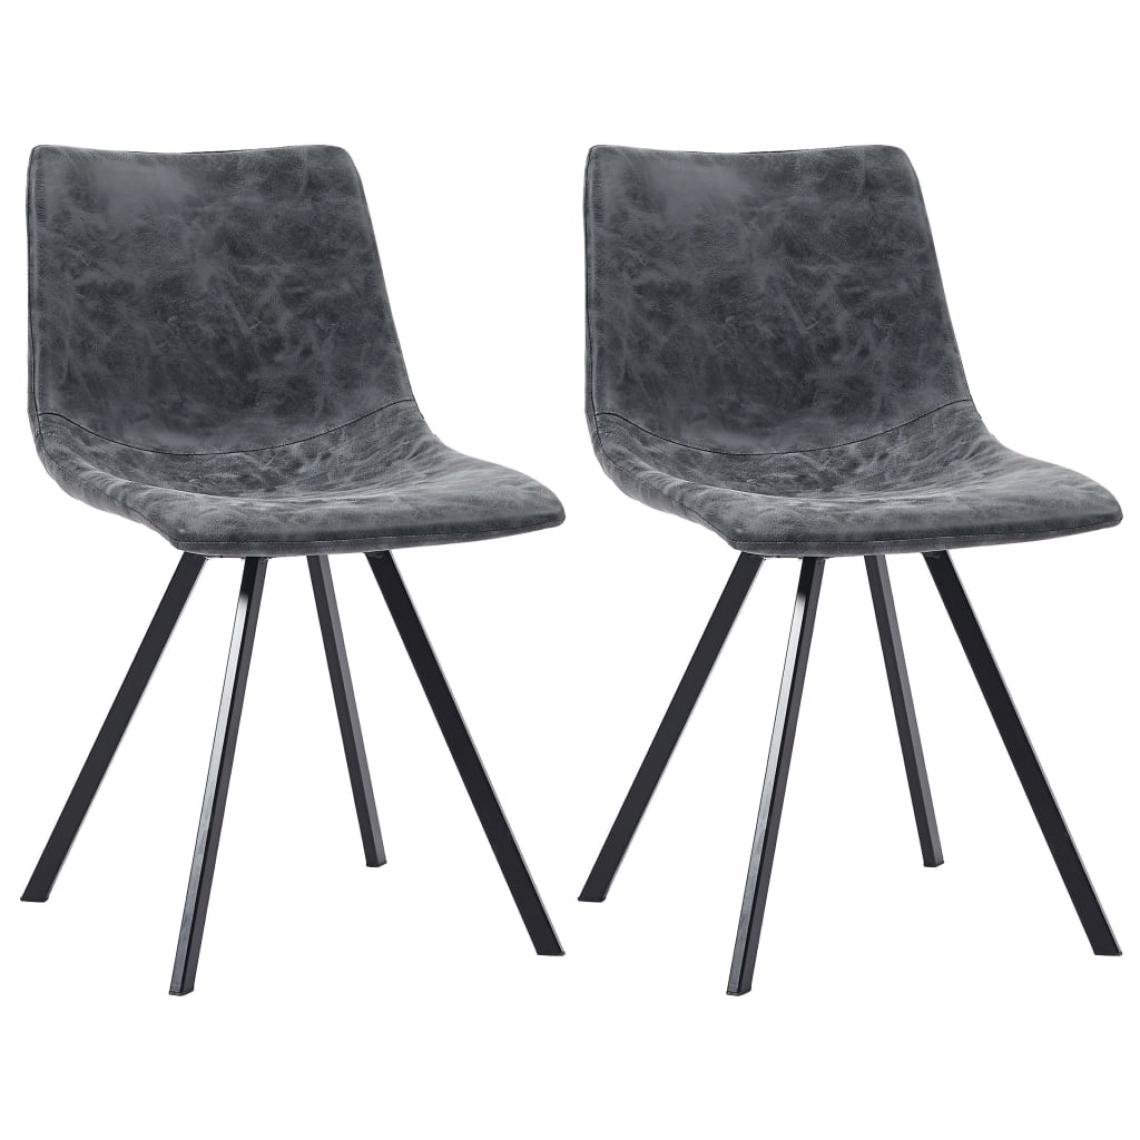 Decoshop26 - Lot de 2 chaises de salle à manger cuisine design moderne similicuir noir CDS020833 - Chaises